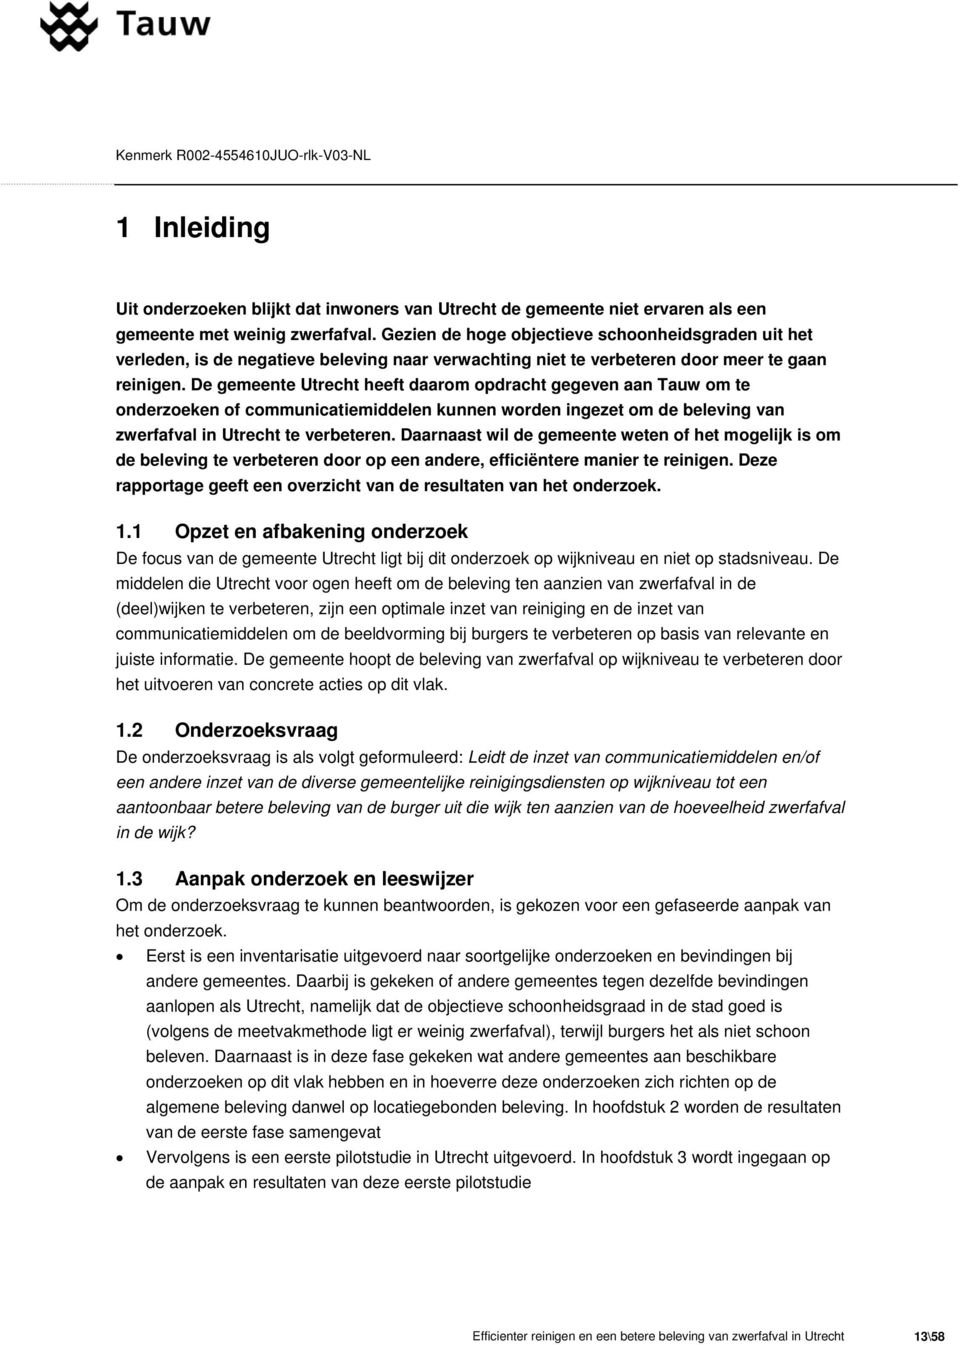 De gemeente Utrecht heeft daarom opdracht gegeven aan Tauw om te onderzoeken of communicatiemiddelen kunnen worden ingezet om de beleving van zwerfafval in Utrecht te verbeteren.